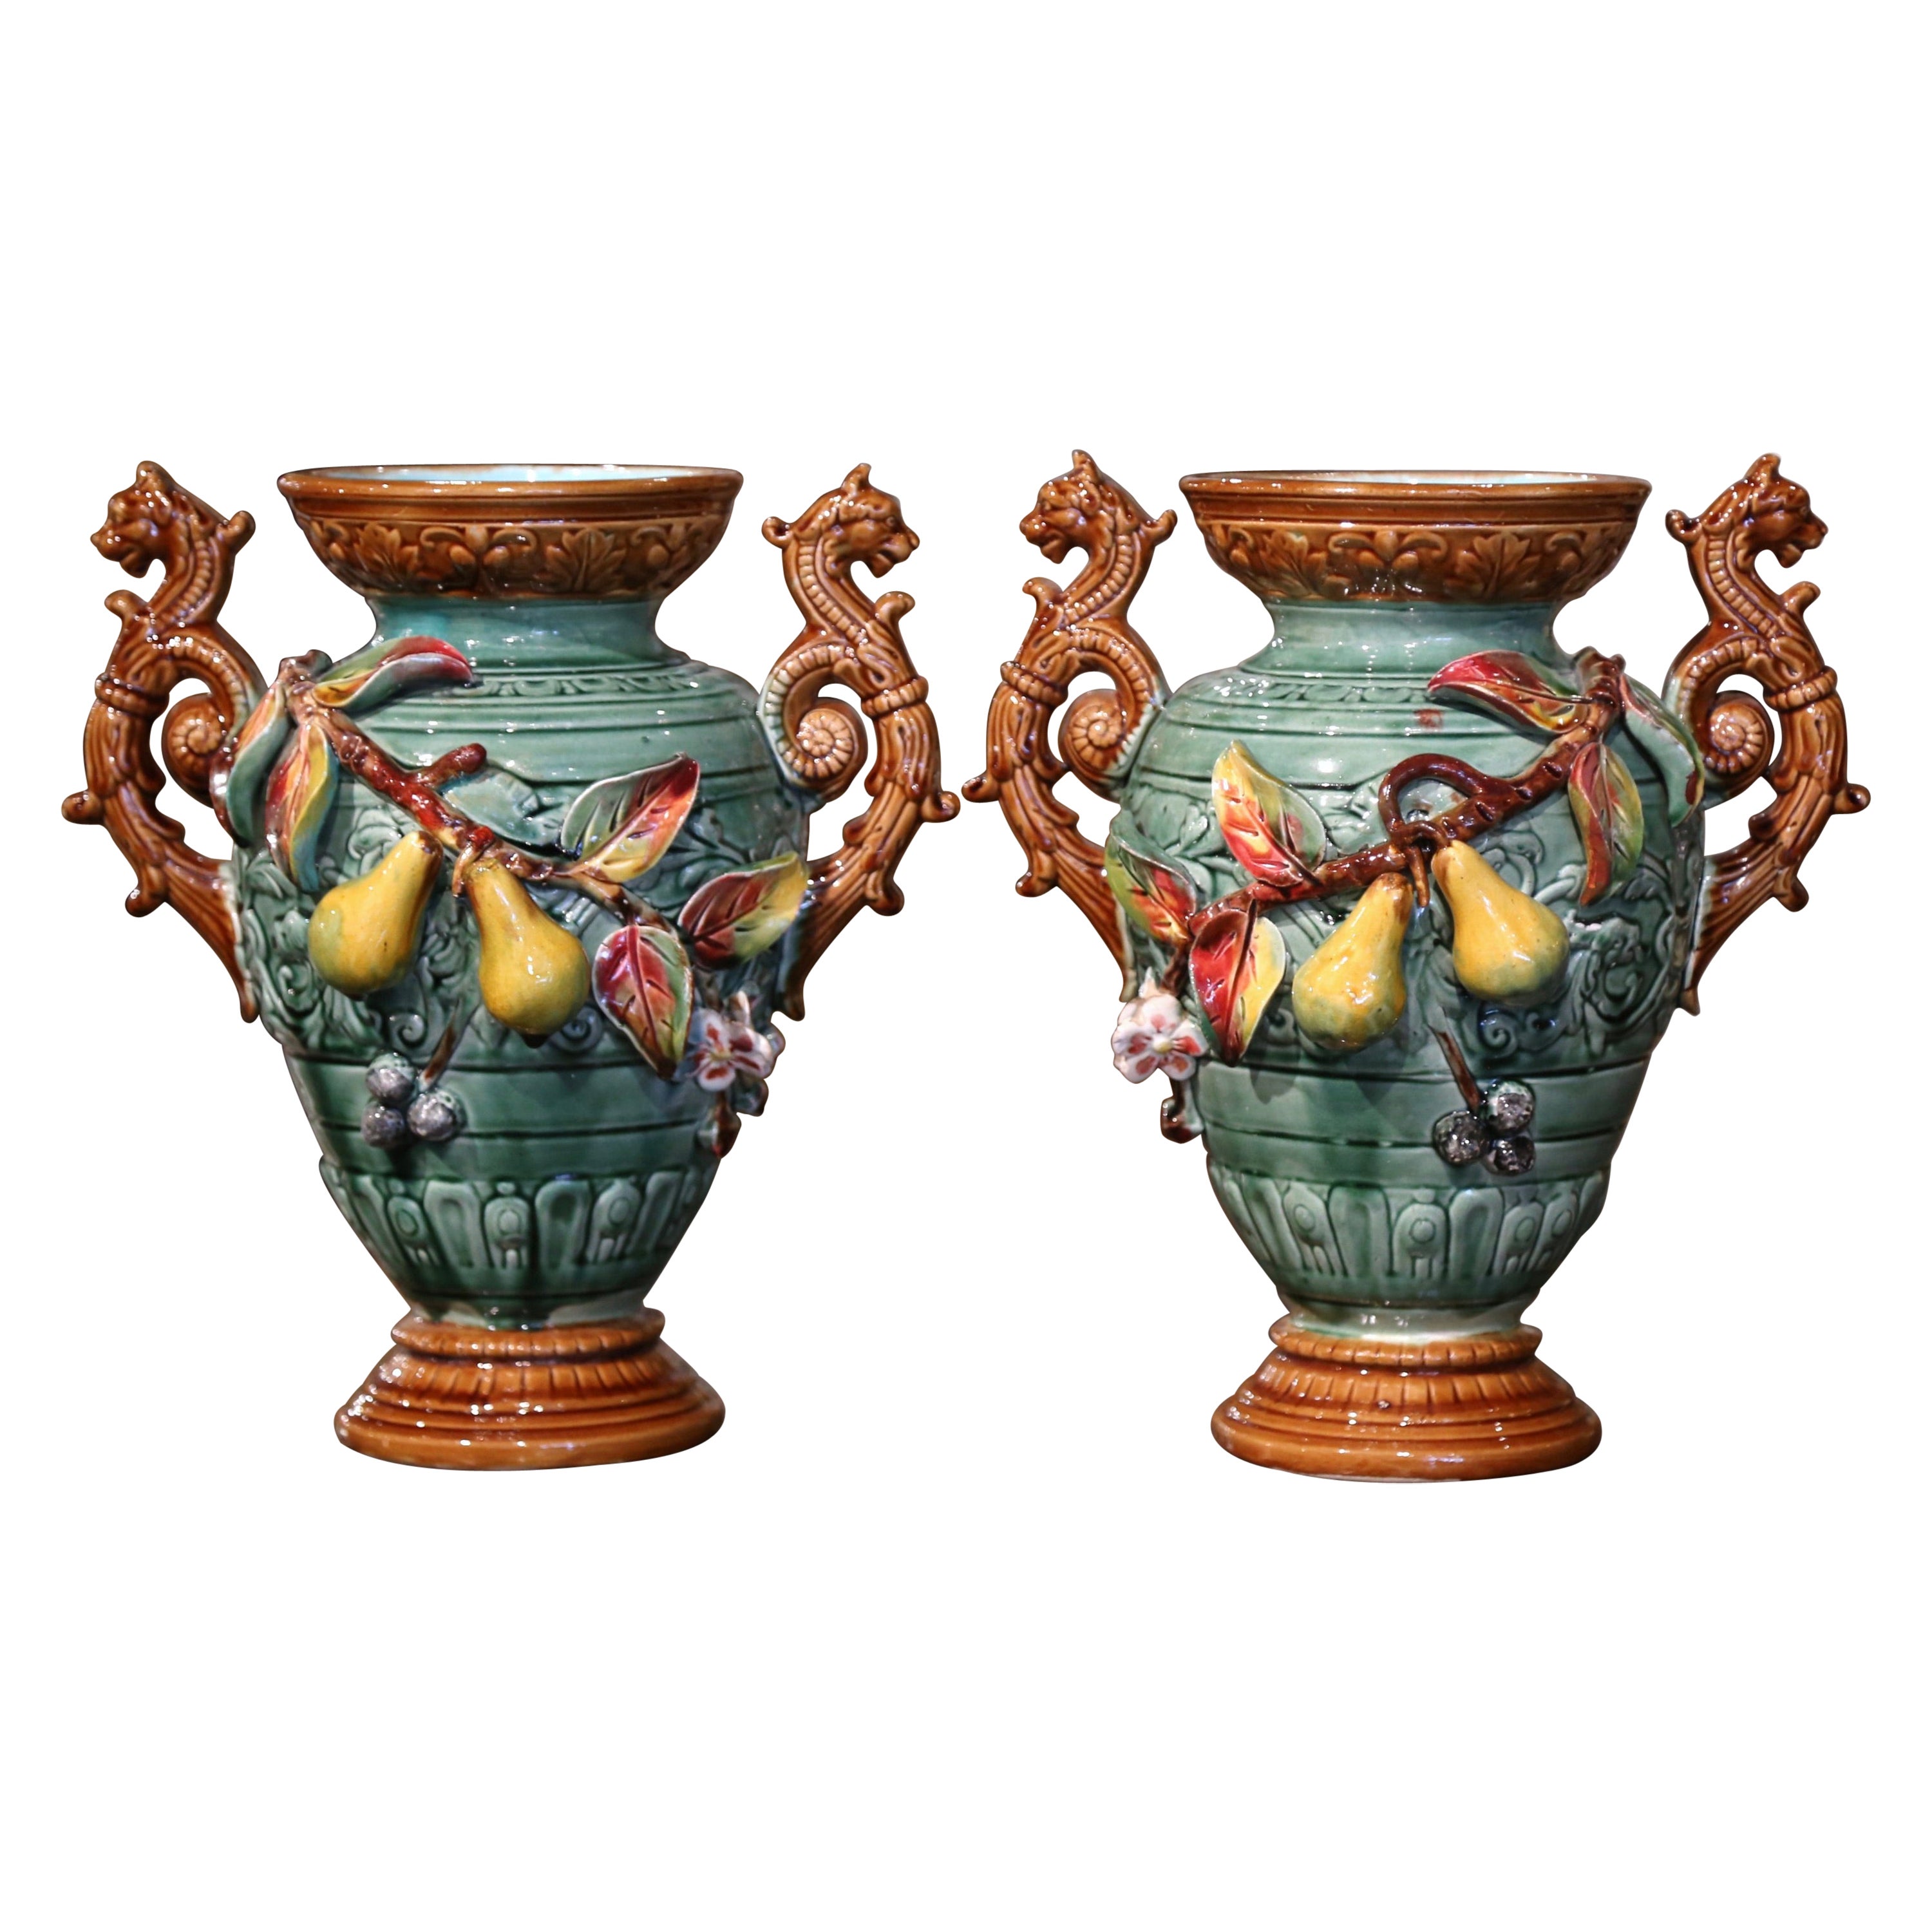 Paire de vases Barbotine du 19ème siècle peints à la main avec des motifs de fruits